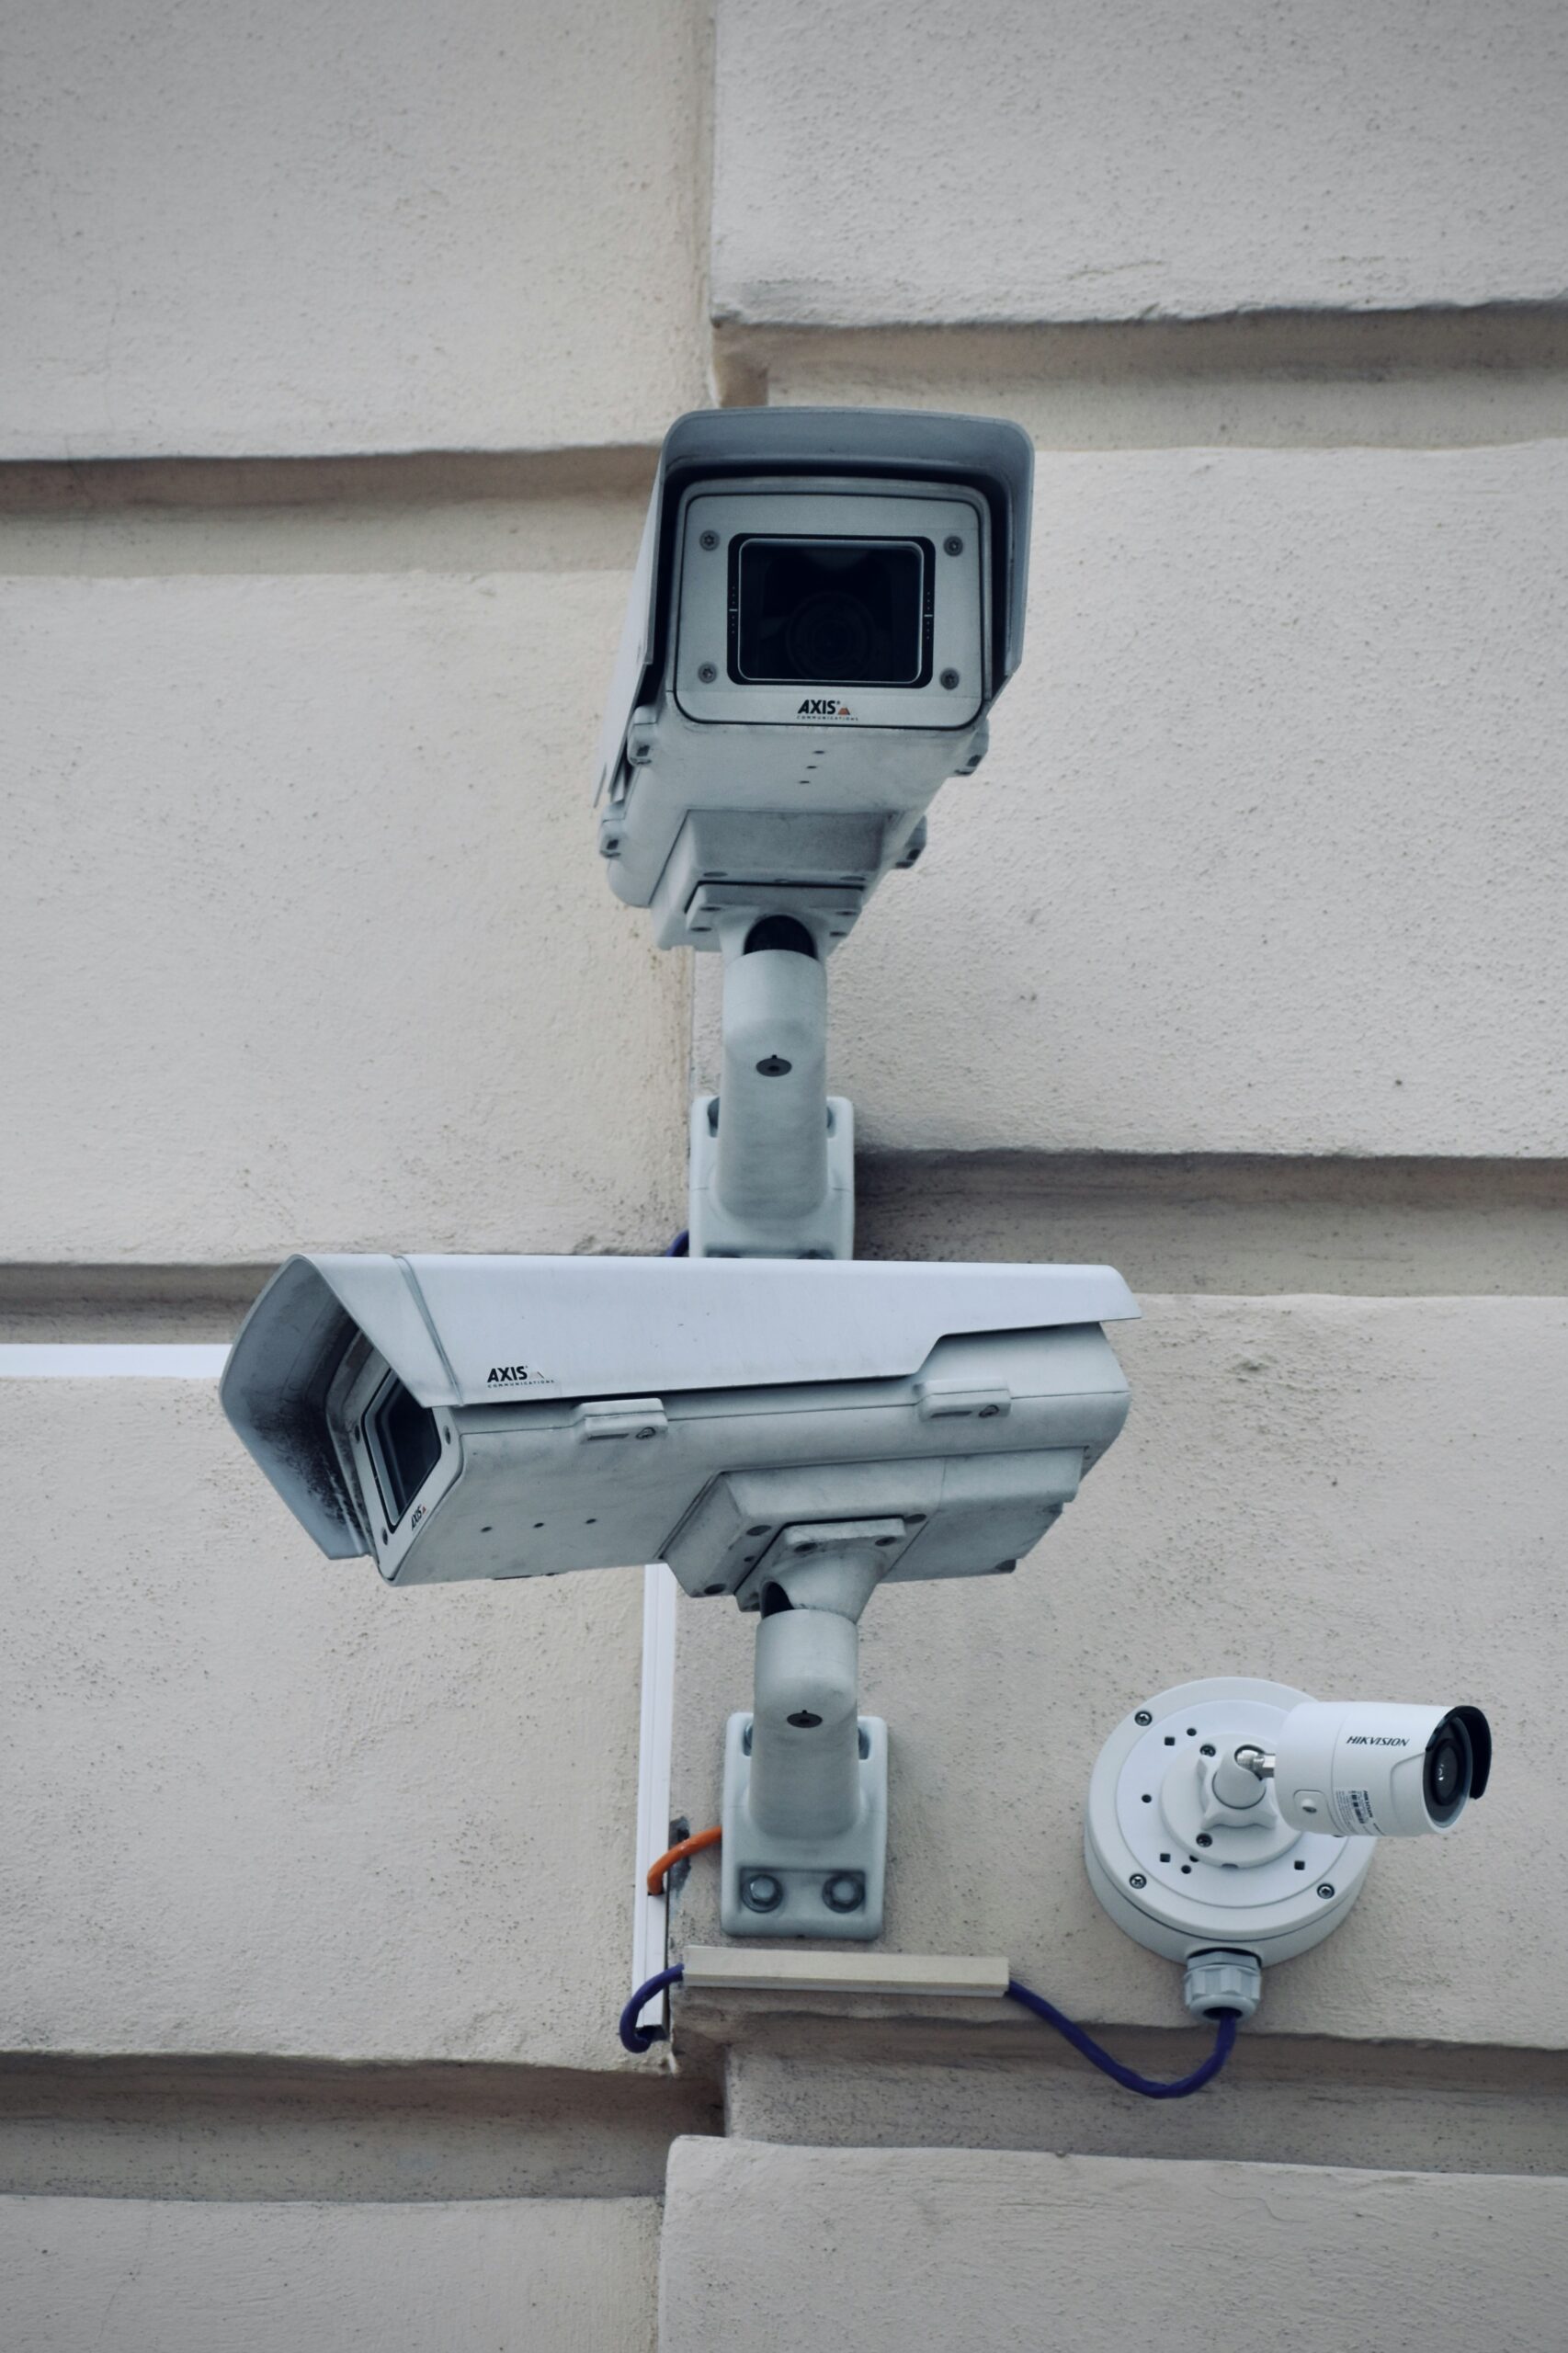 <a href="#sicurezza-videosorveglianza">Security and <br>Video surveillance</a>